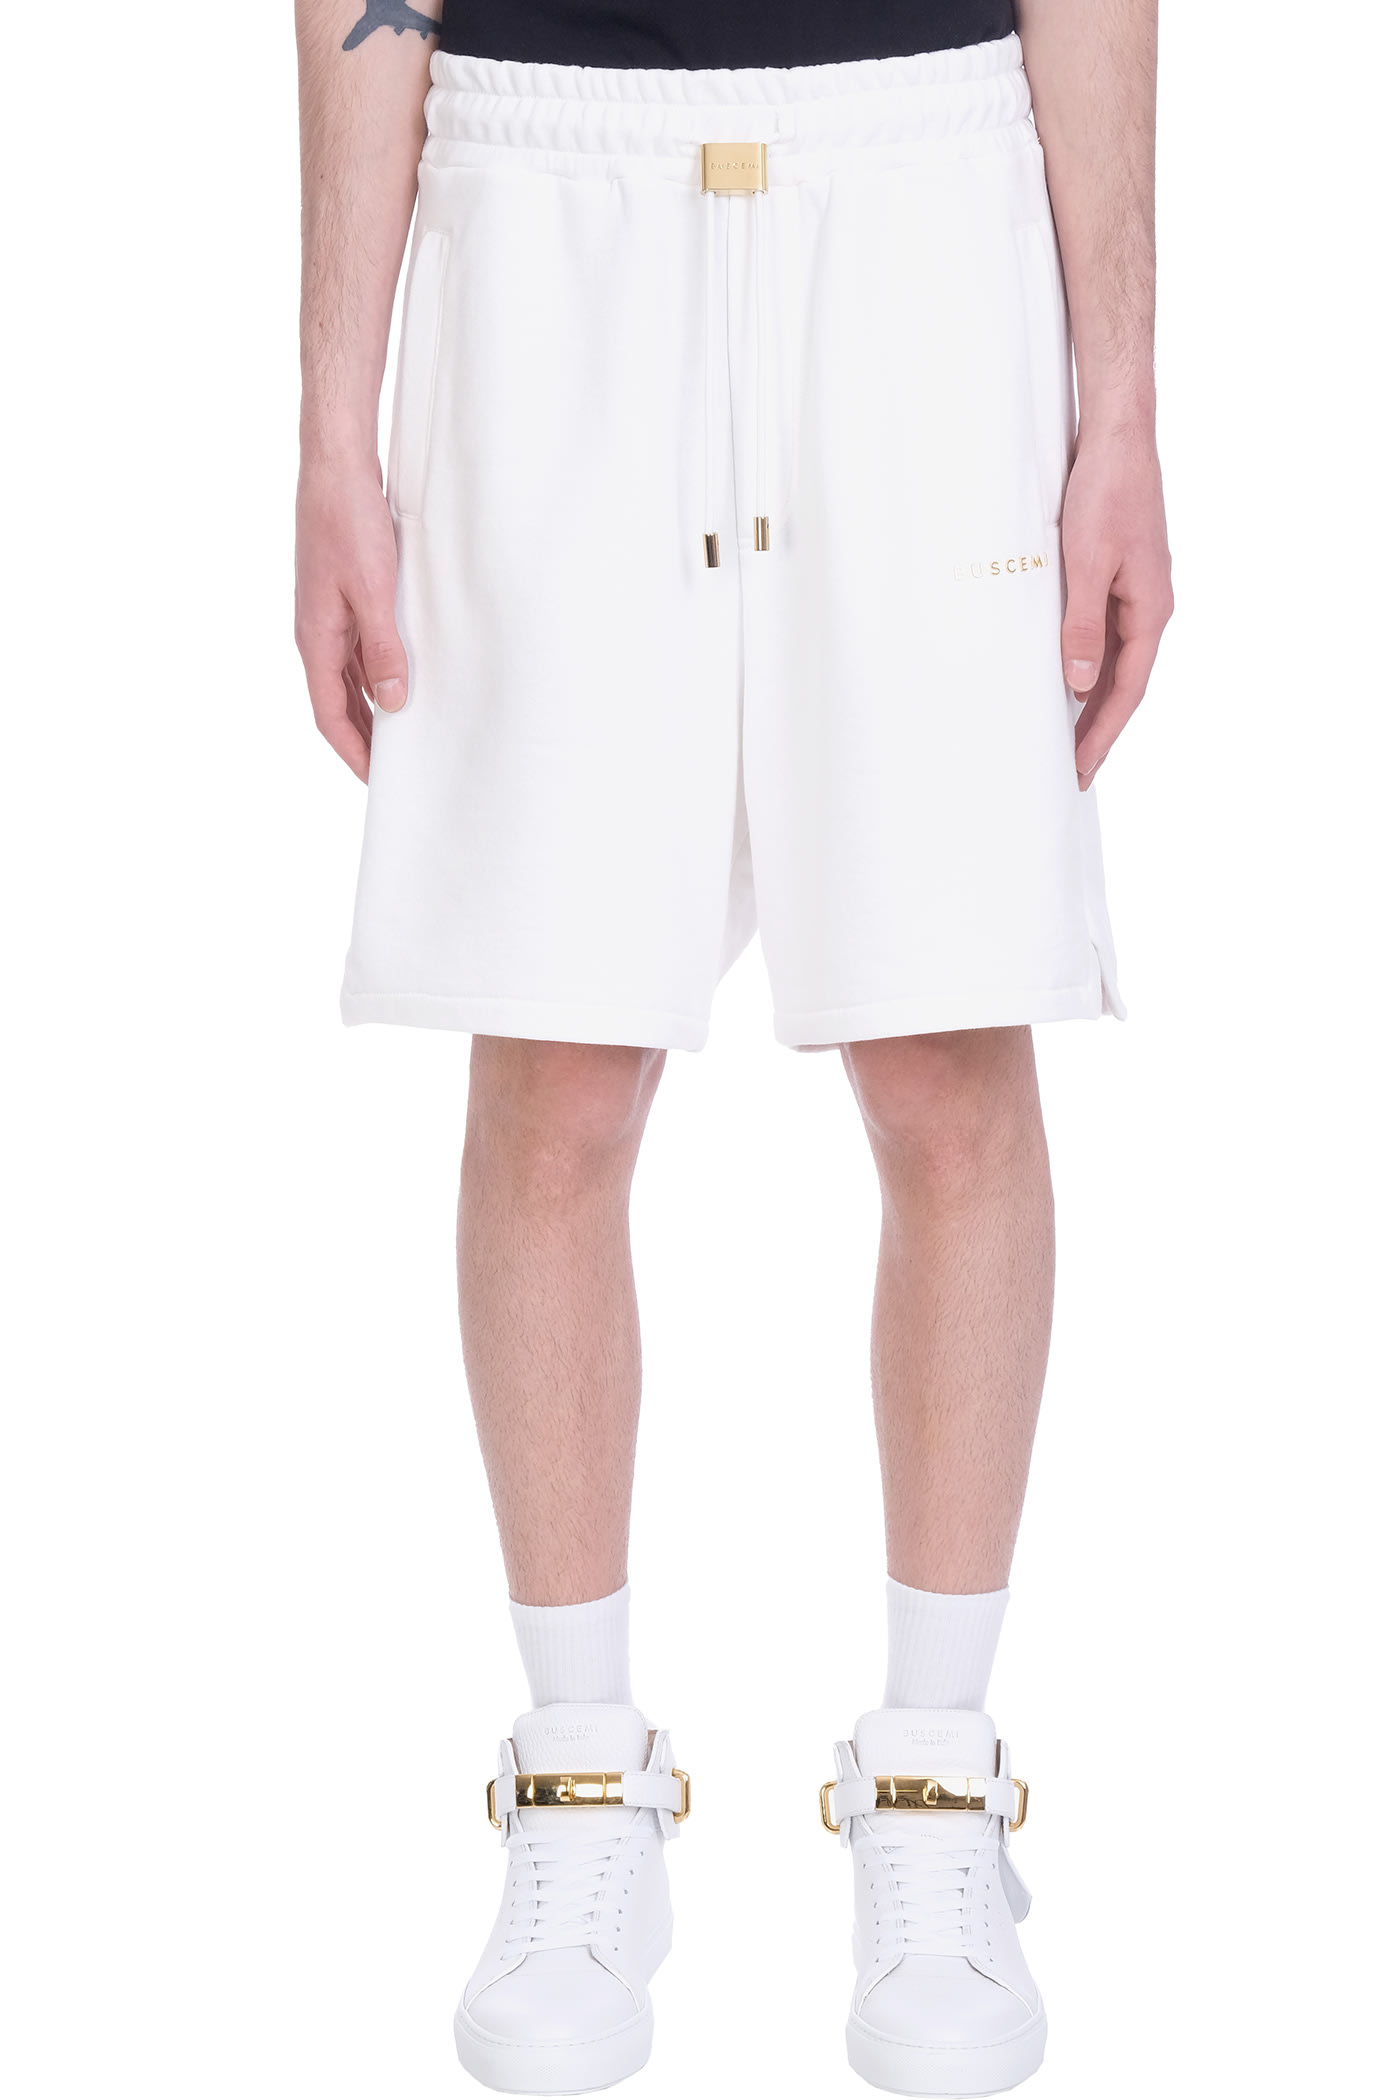 Buscemi Shorts In White Cotton